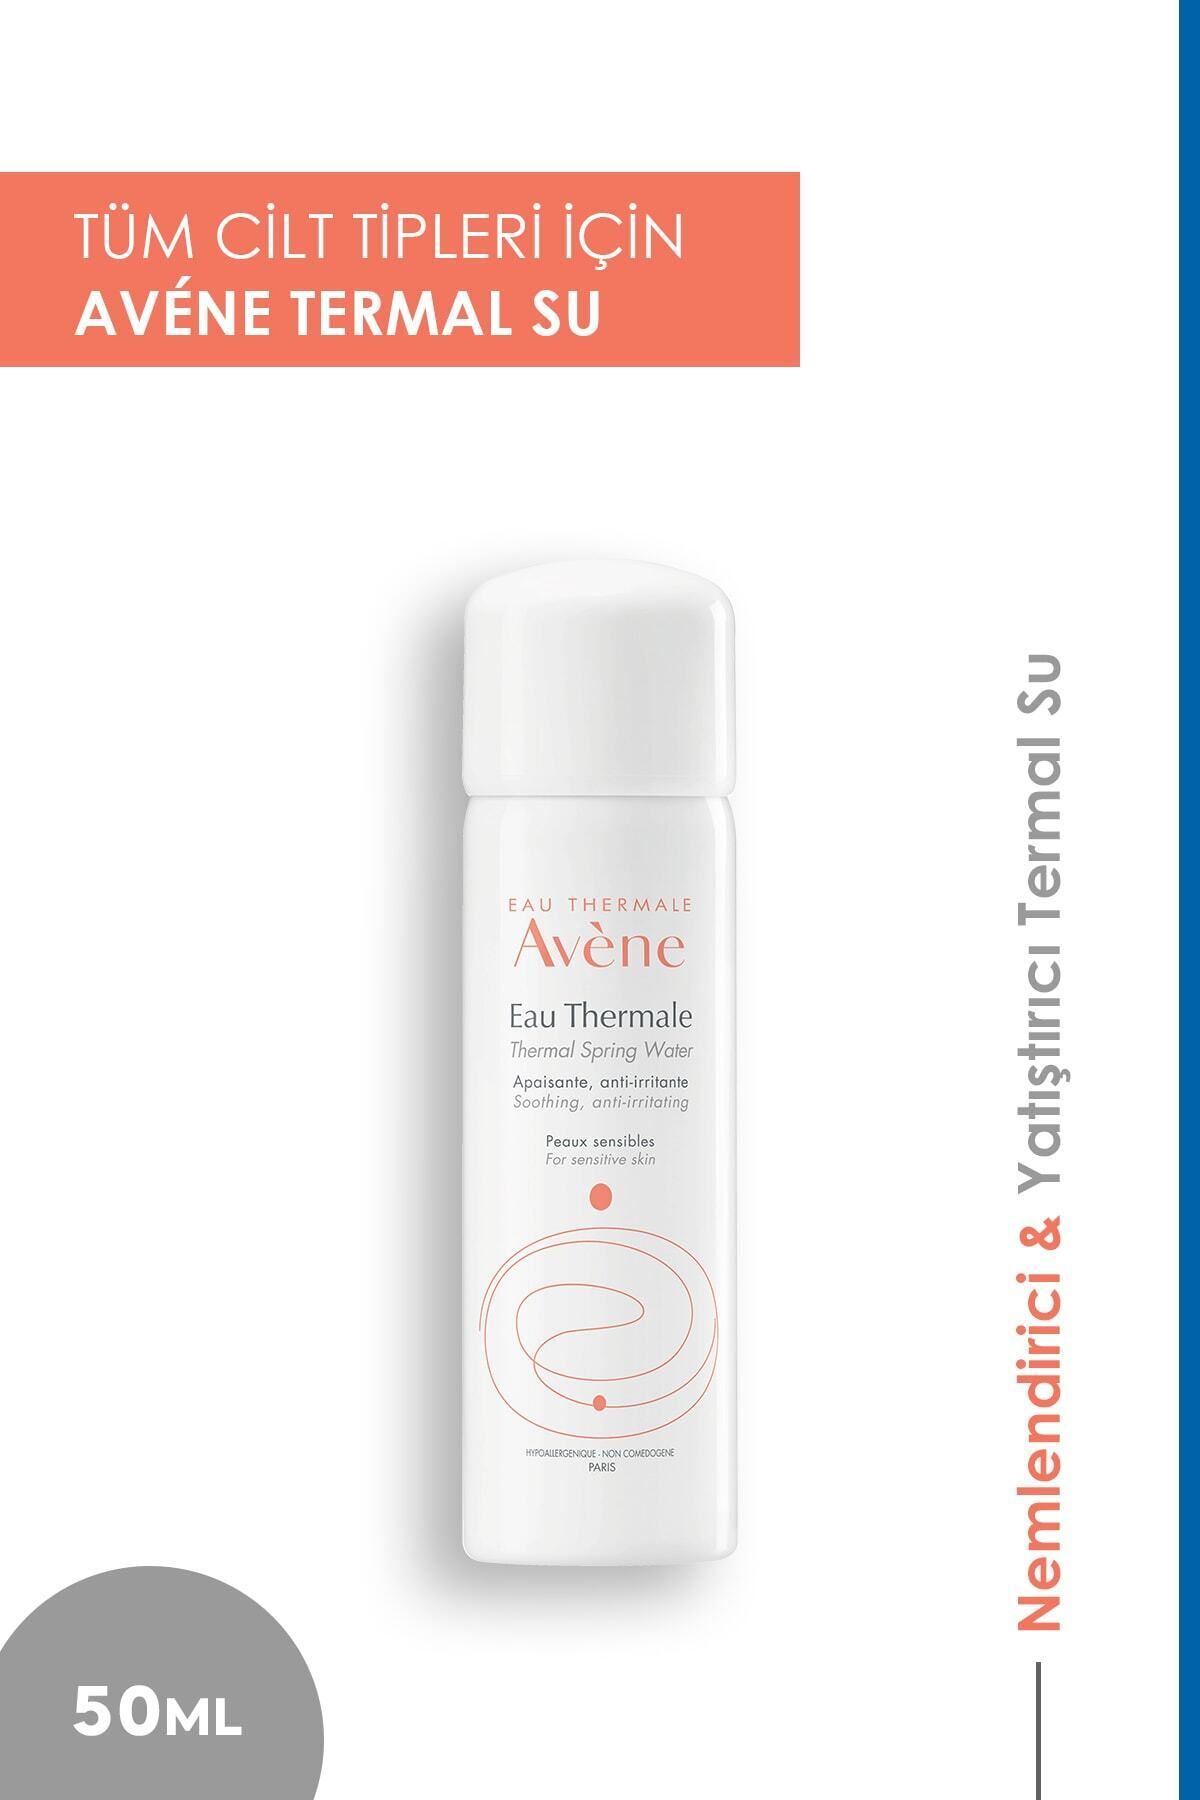 Avene Avène Tüm Cilt Tipleri İçin Kullanıma Uygun Yatıştırıcı, Rahatlatıcı Küçük Boy Termal Su 50 ml